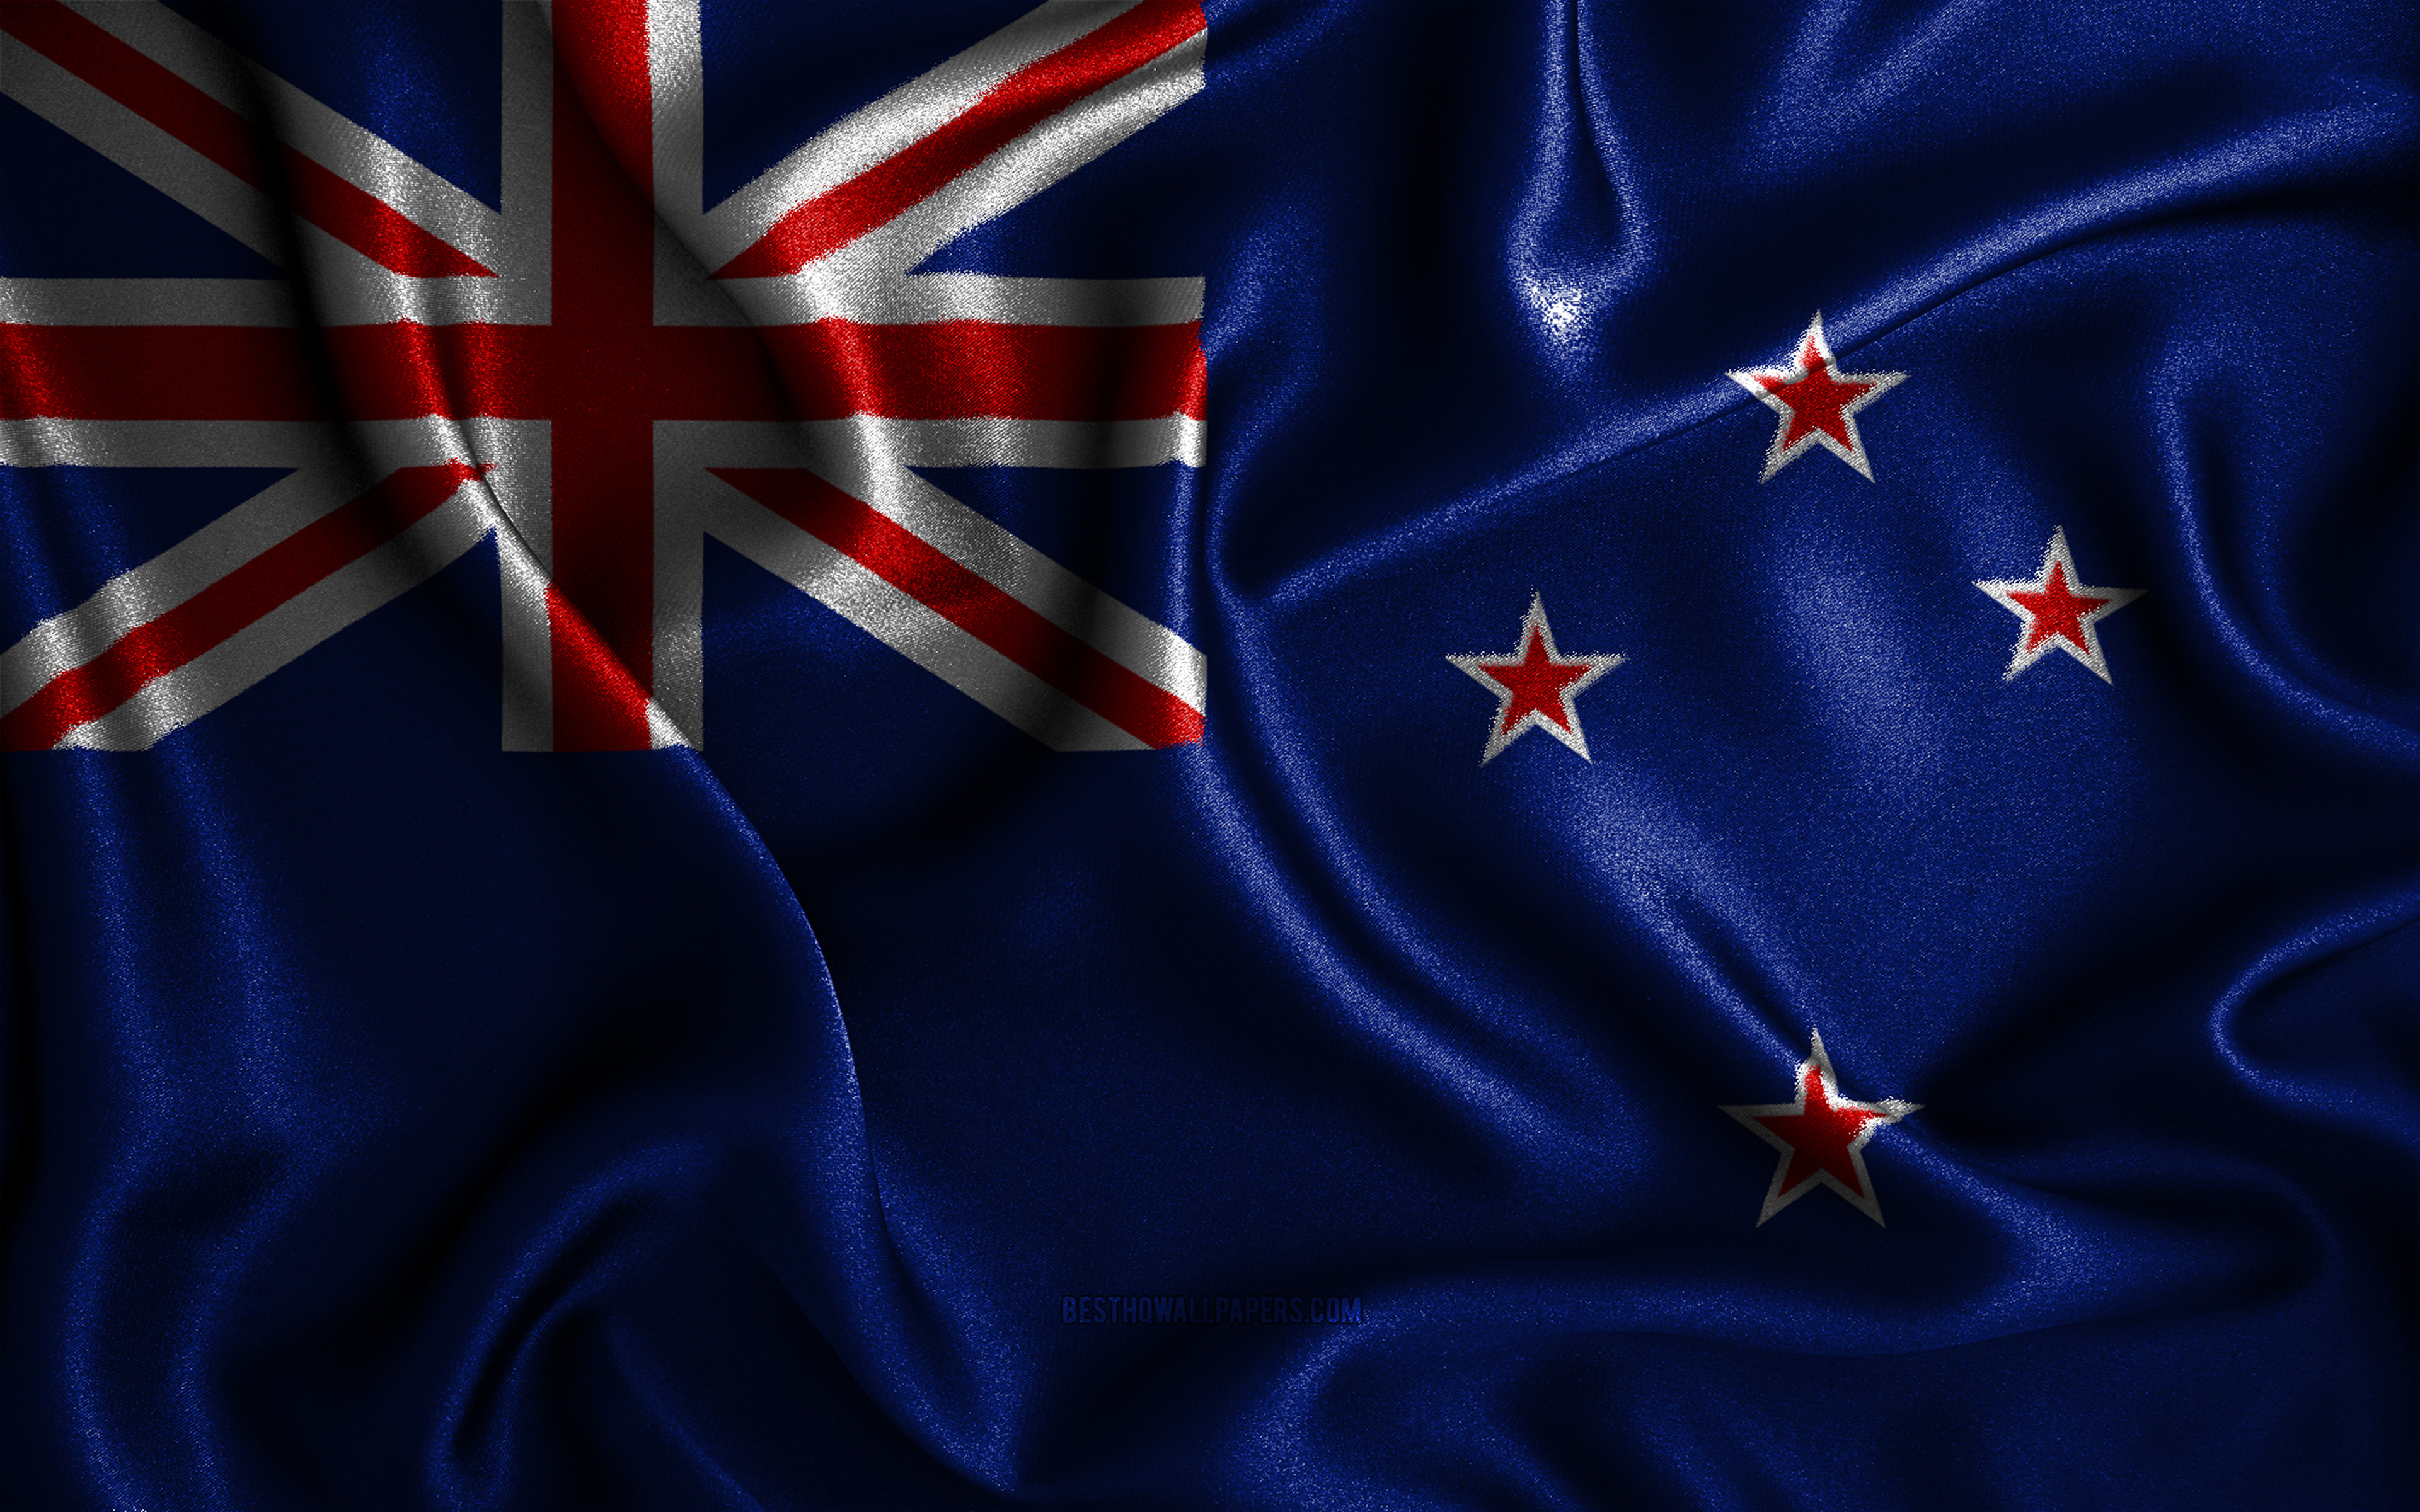 флаг новой зеландии и австралии различия